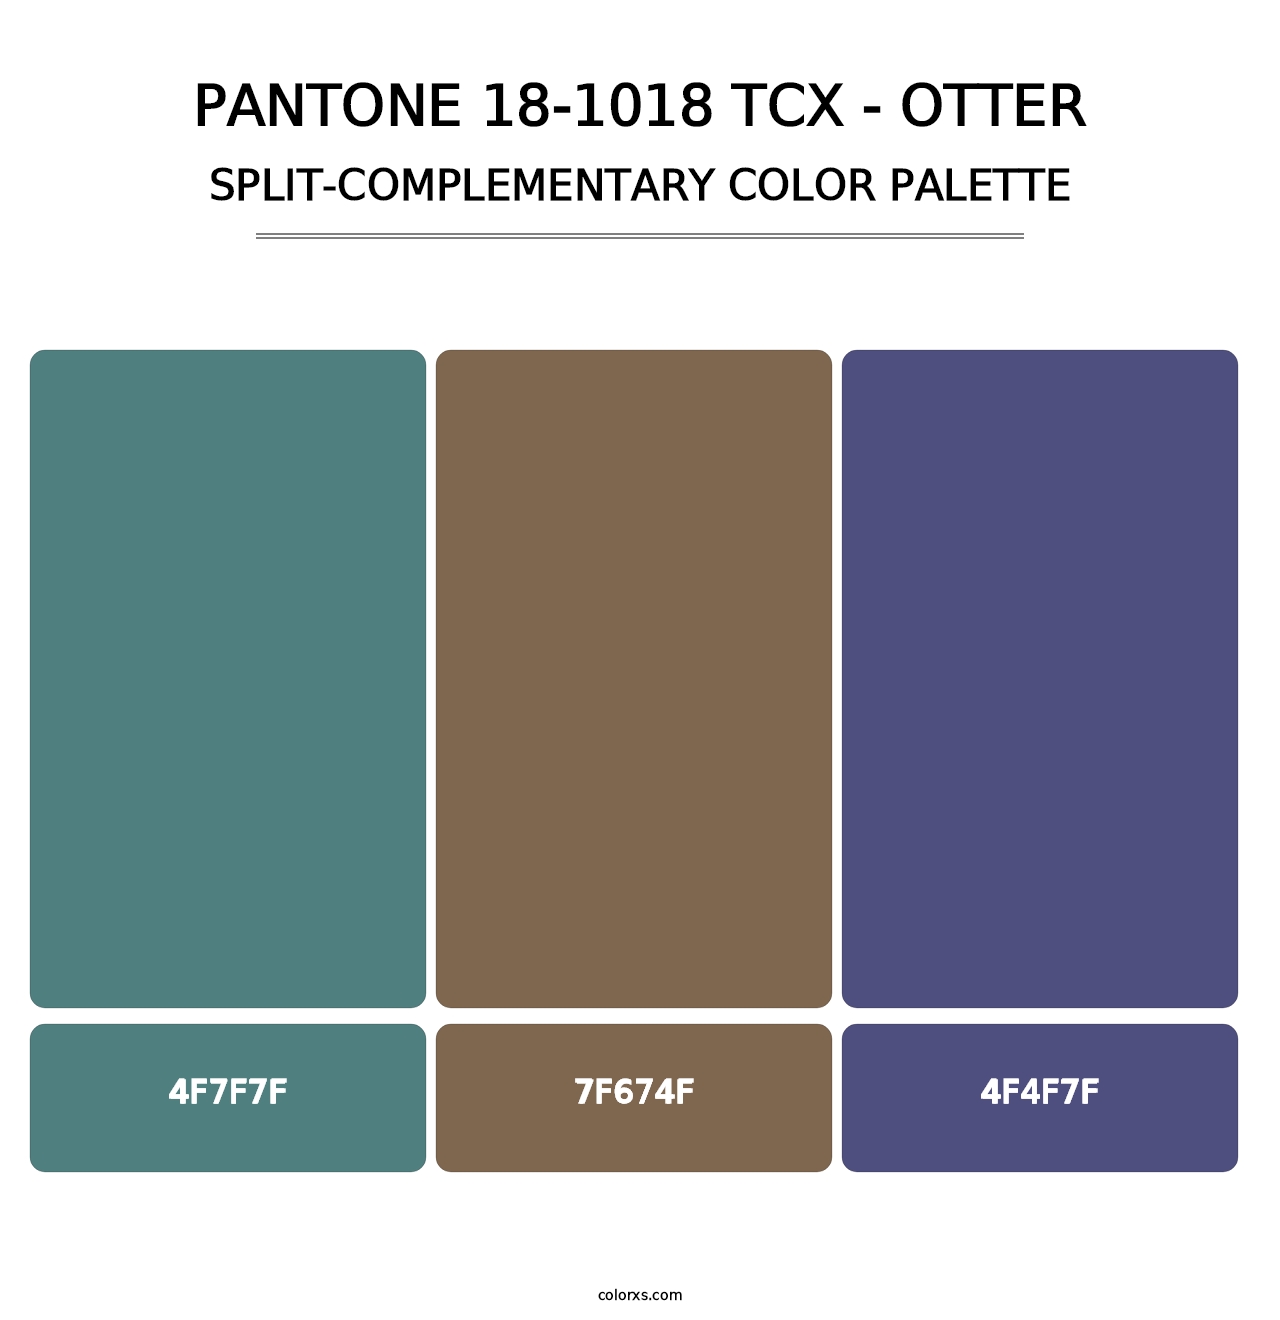 PANTONE 18-1018 TCX - Otter - Split-Complementary Color Palette